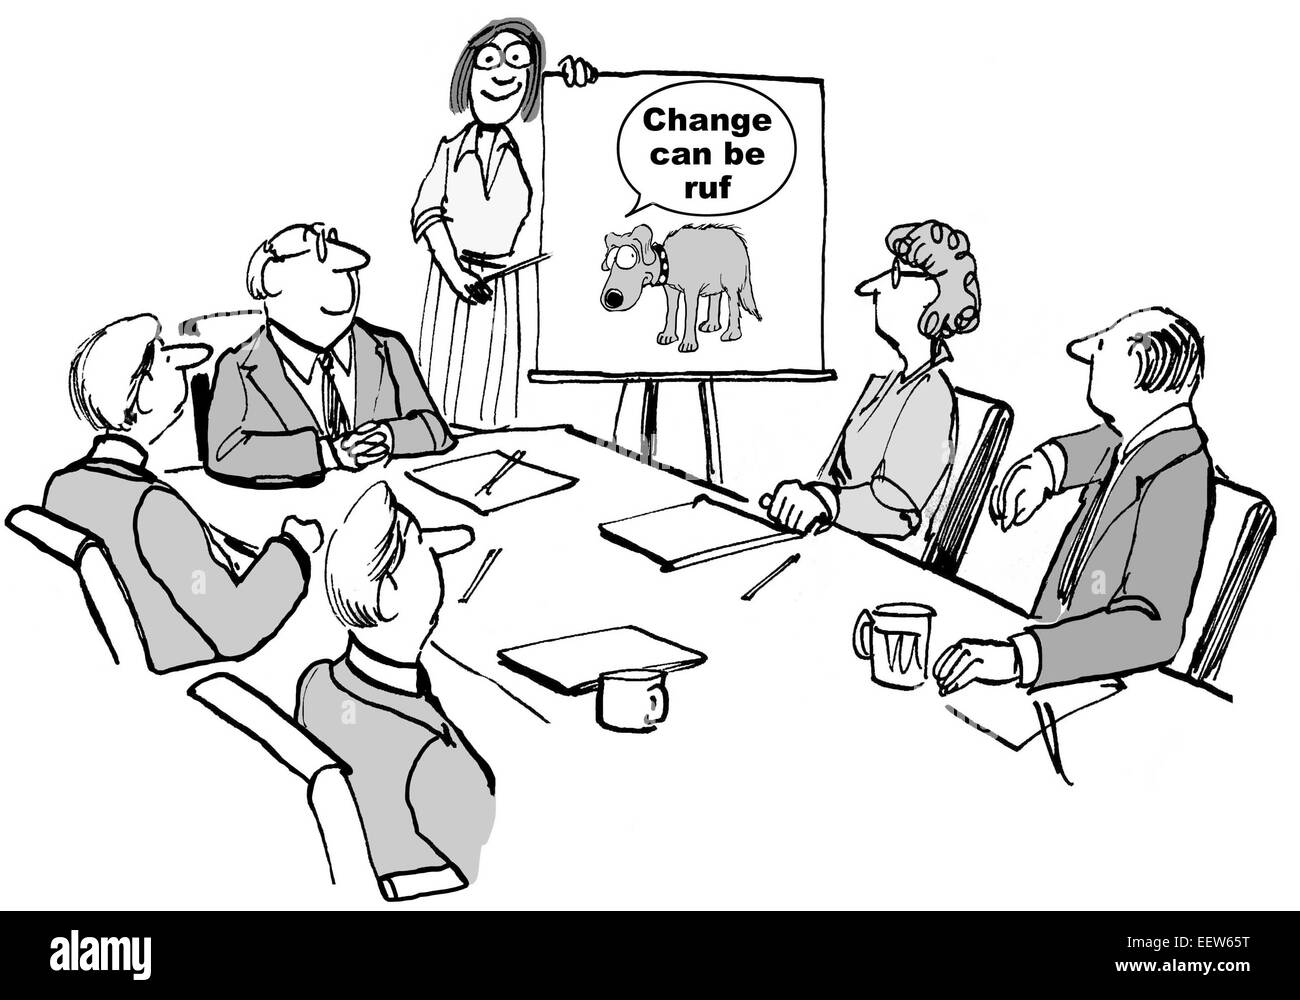 Karikatur von einer Geschäftsfrau führt ein Seminar und teilen diese Änderung kann "Ruf" (Rough). Stockfoto